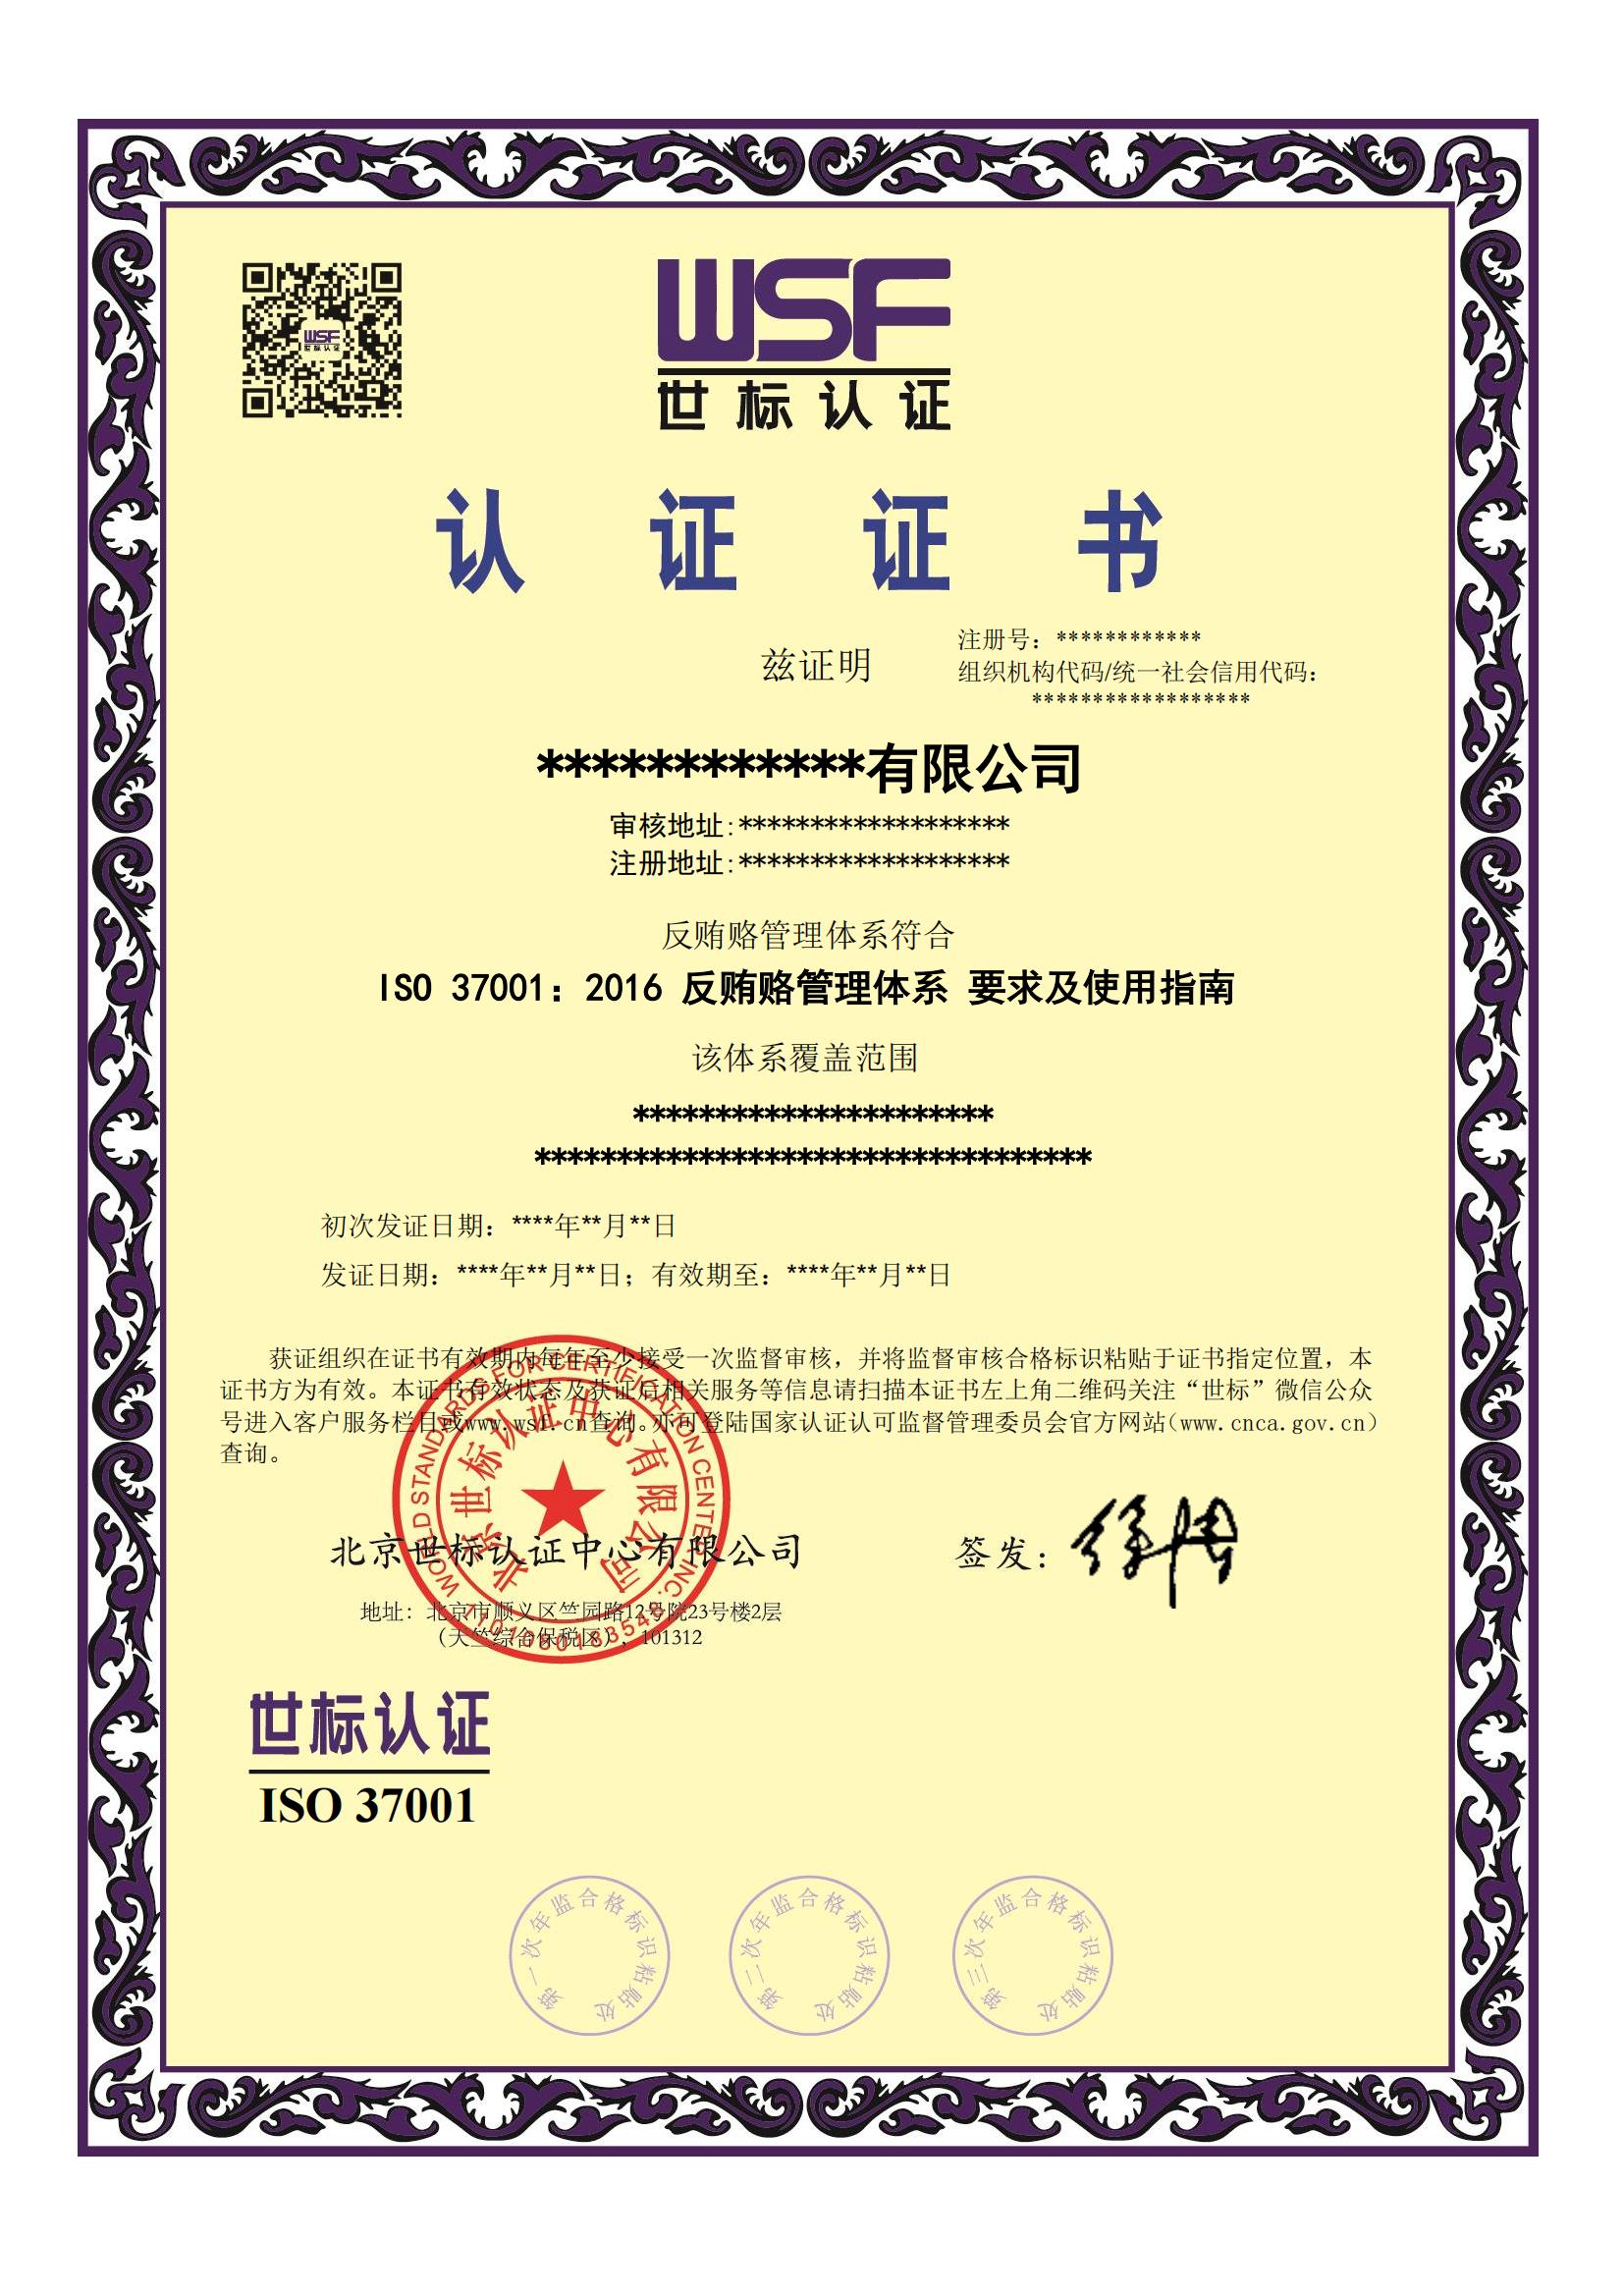 反贿赂管理体系认证证书样本-中_00.jpg